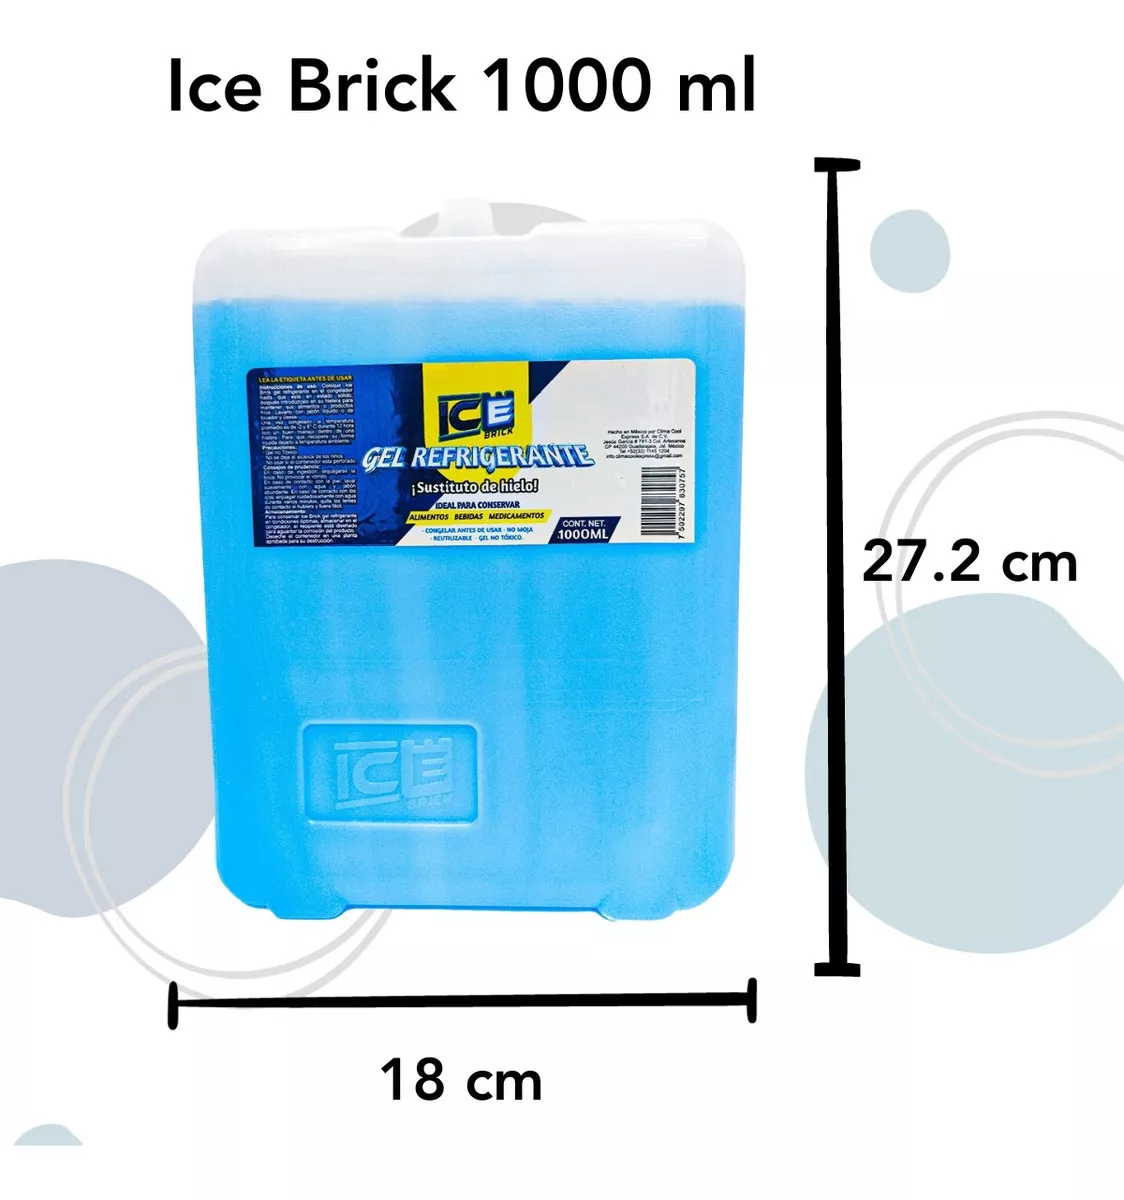 Tercera imagen para búsqueda de gel refrigerante reutilizable